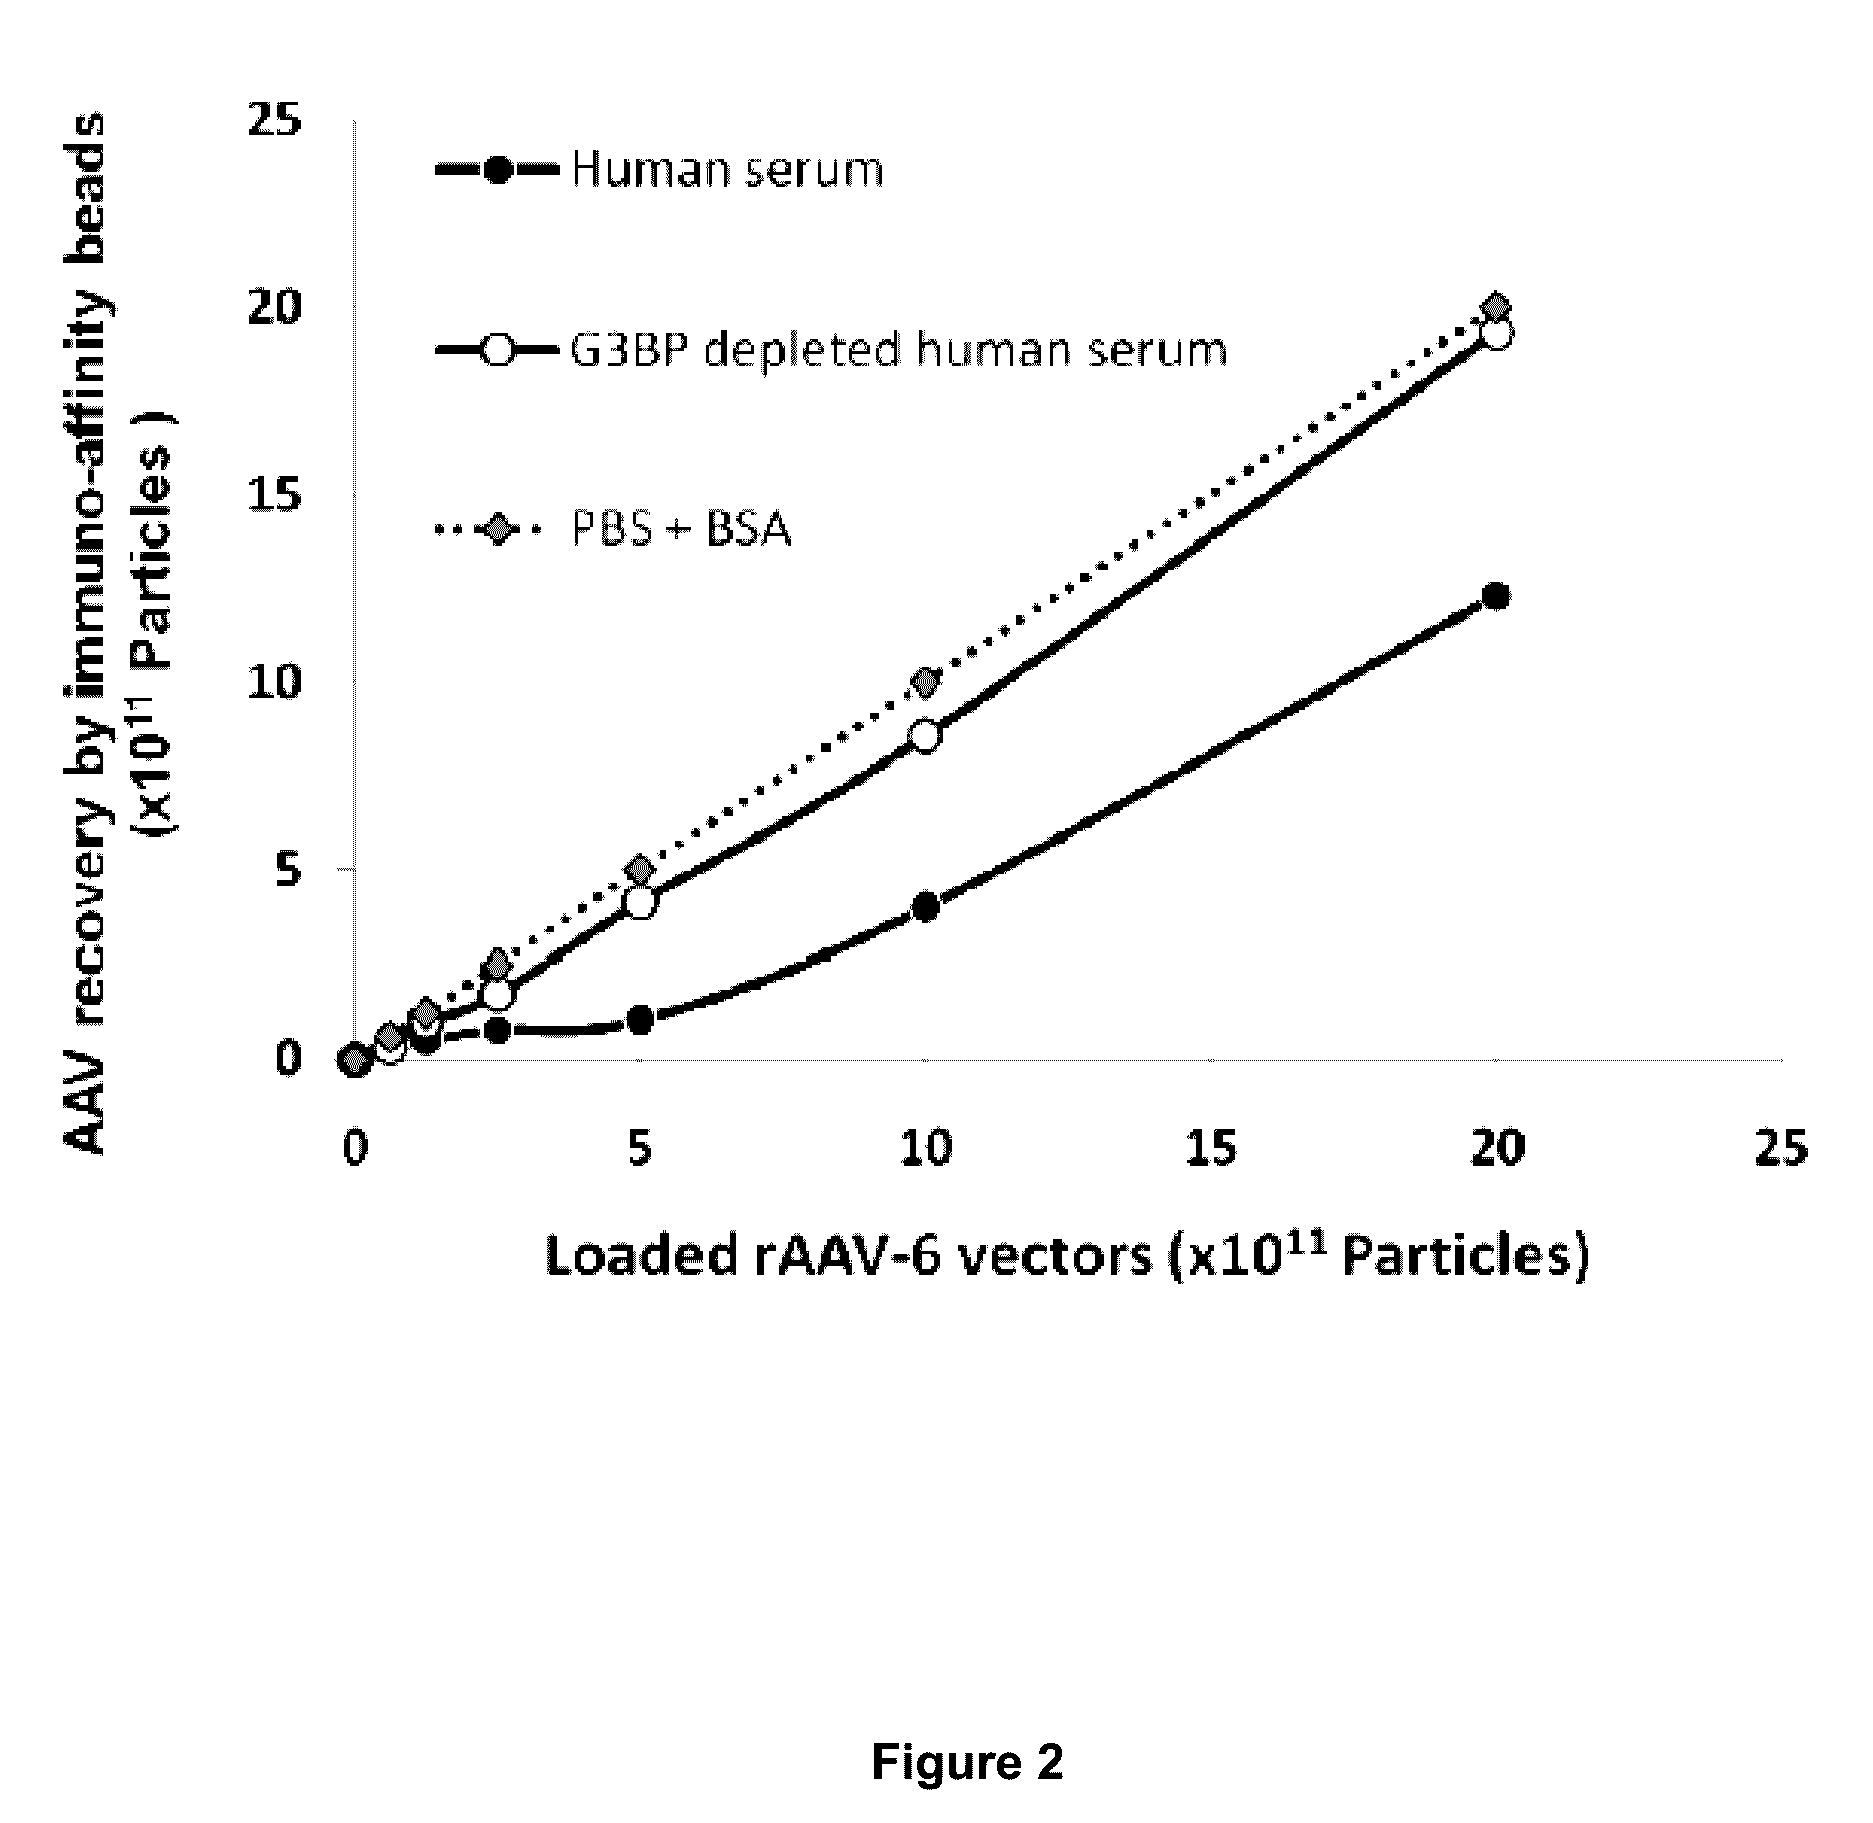 Methods of increasing efficiency of vector penetration of target tissue